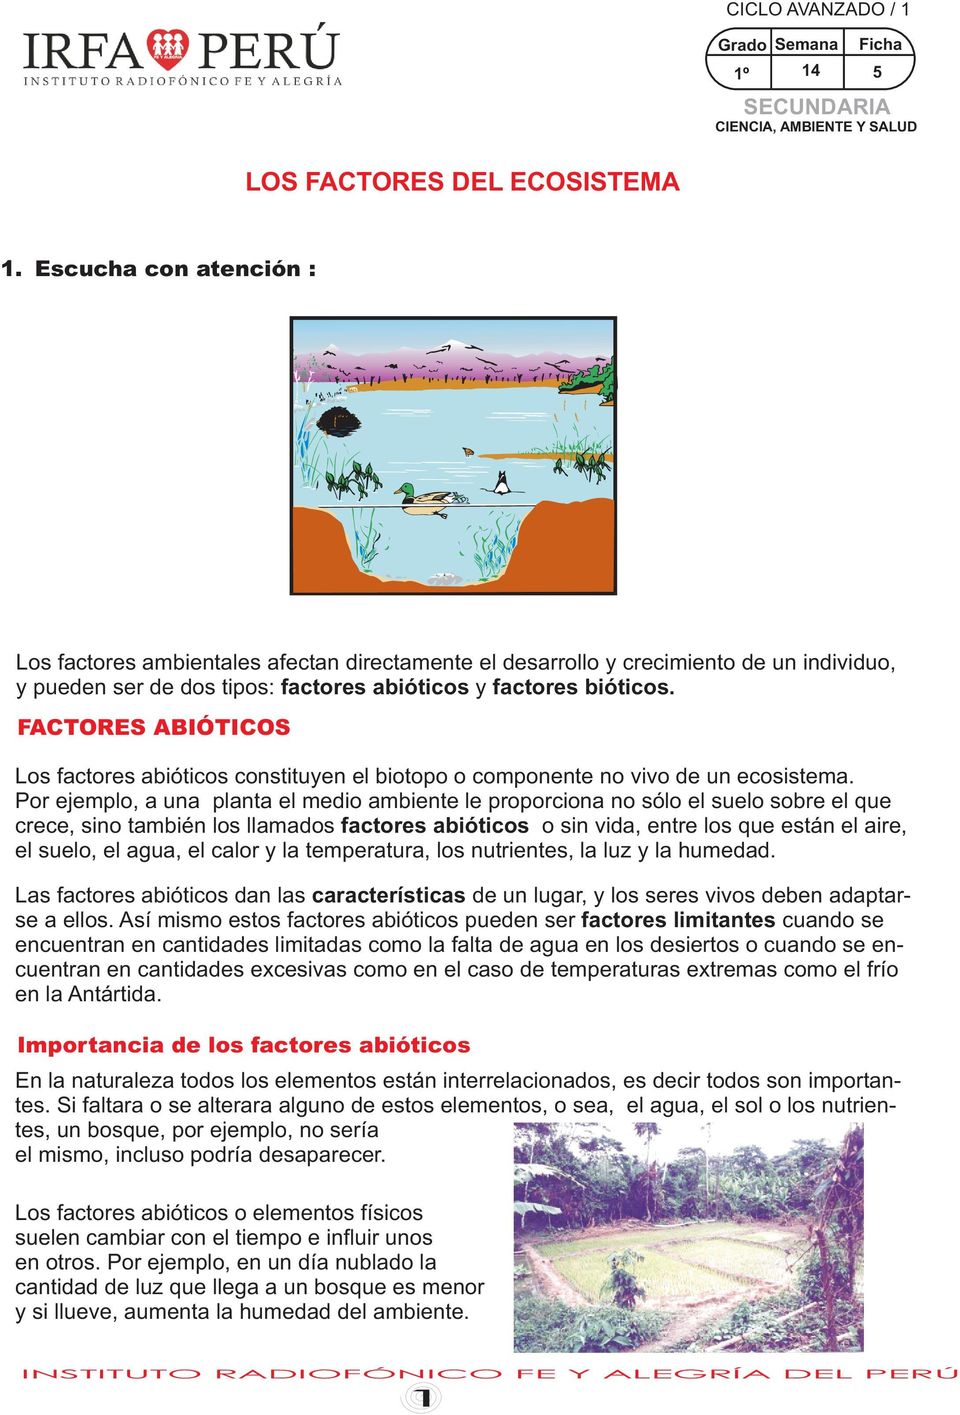 ACTORES ABIÓTICOS Los factores abióticos constituyen el biotopo o componente no vivo de un ecosistema.